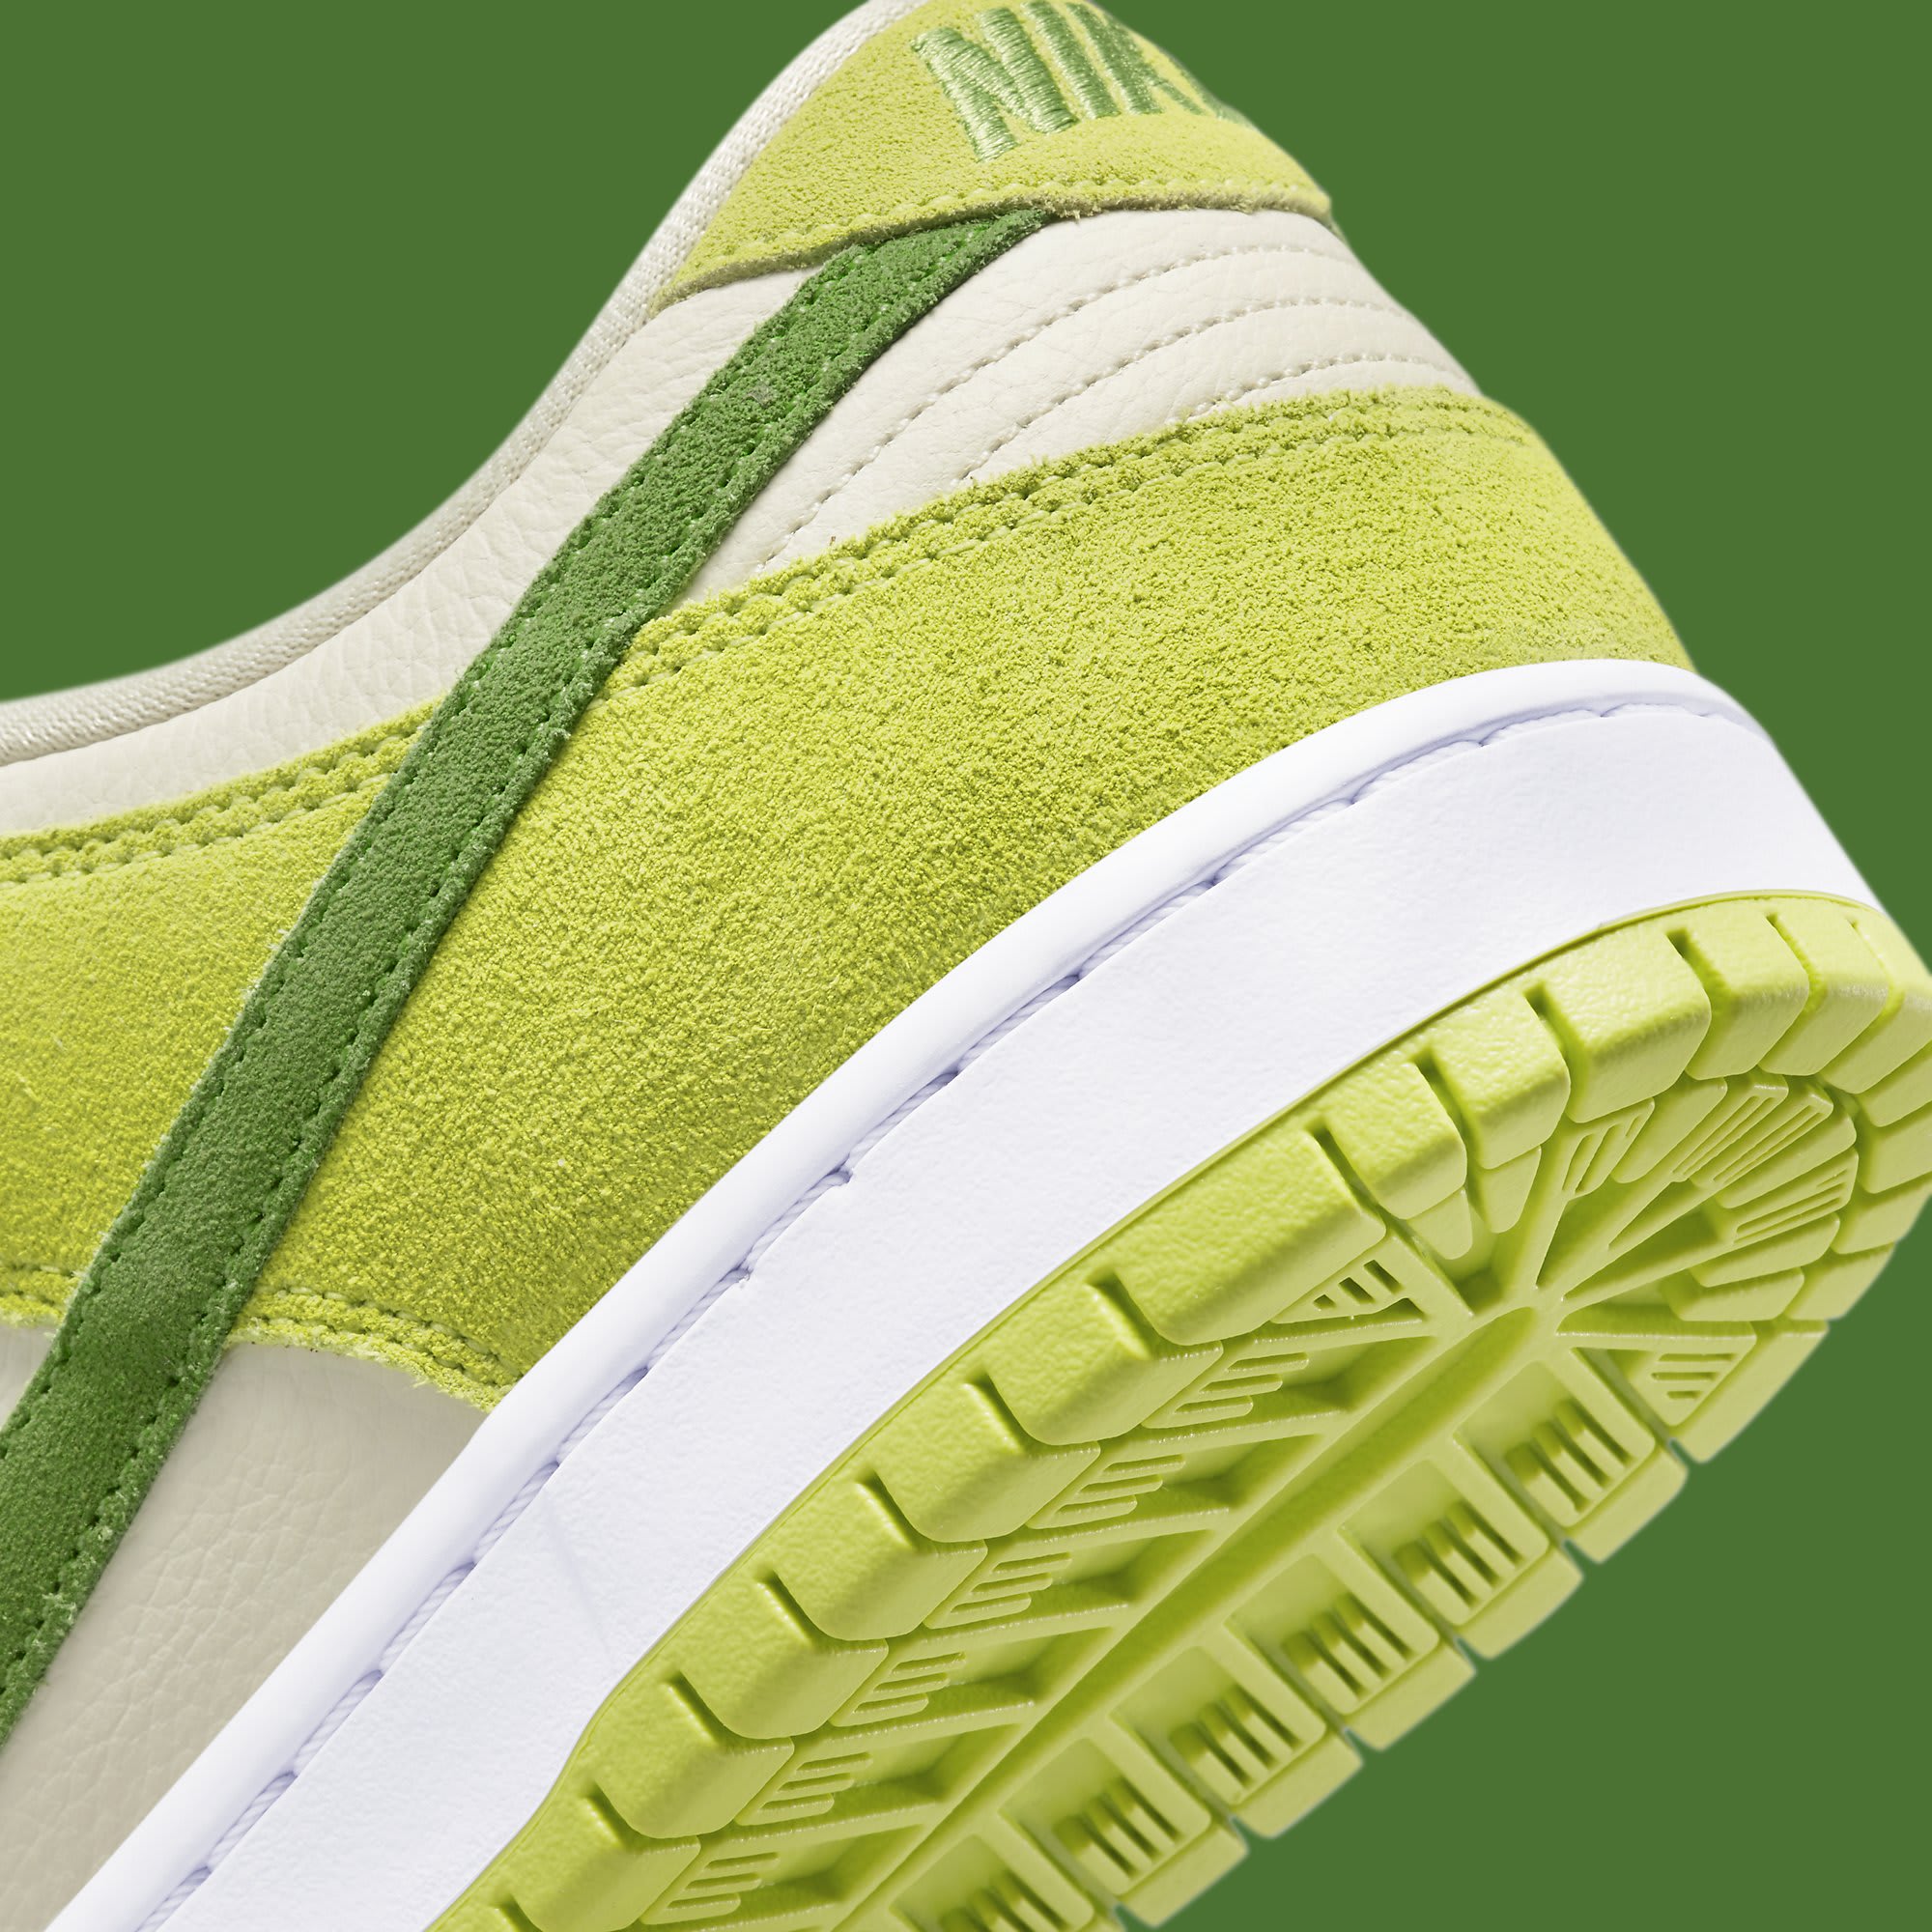 Nike SB Dunk Low 'Green Apple' Fruity Pack Release Date DM0807 300 